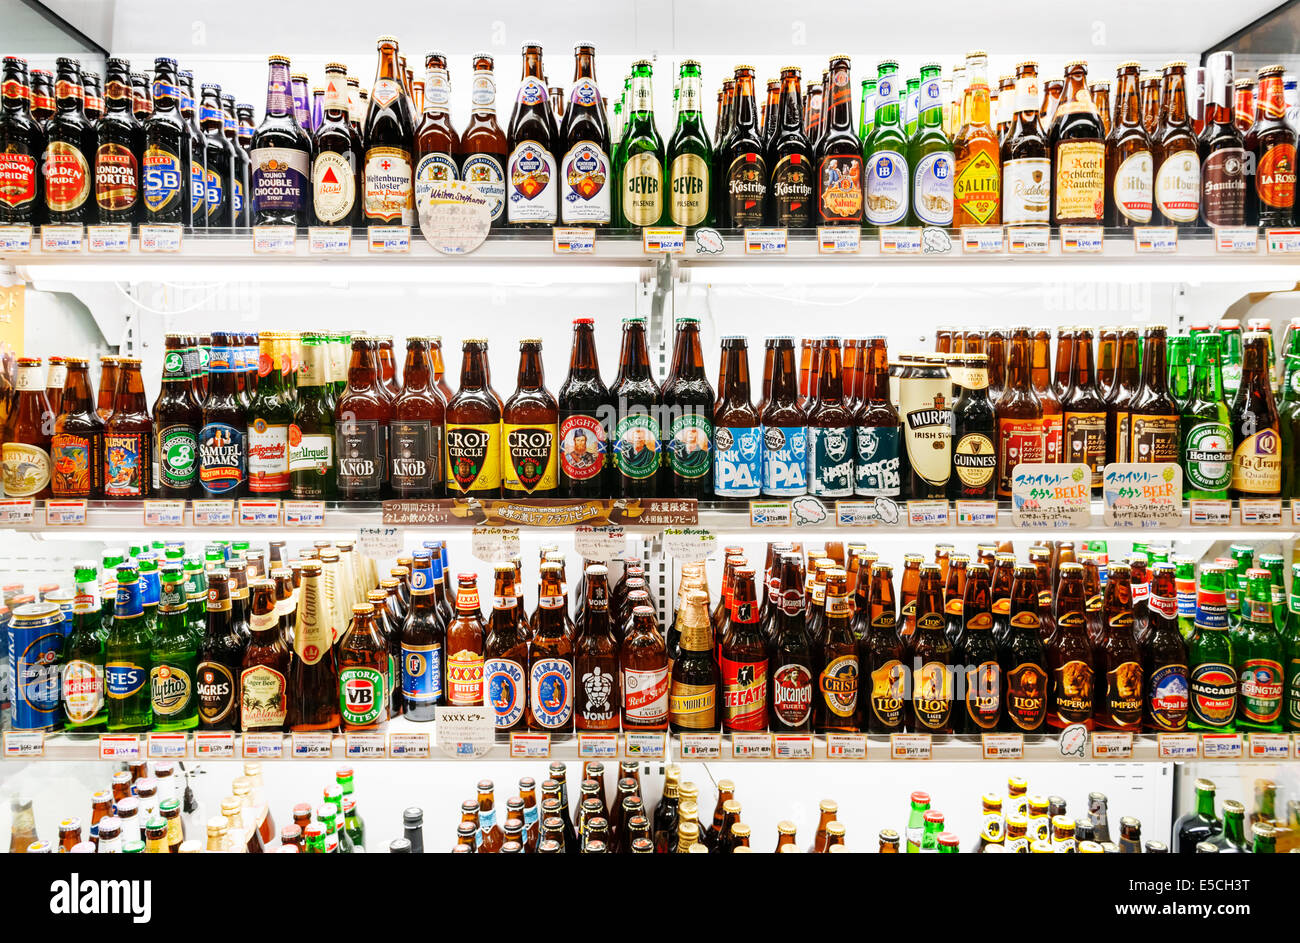 Las cervezas importadas en los estantes de una tienda de cerveza Japonesa. Tokio, Japón. Foto de stock